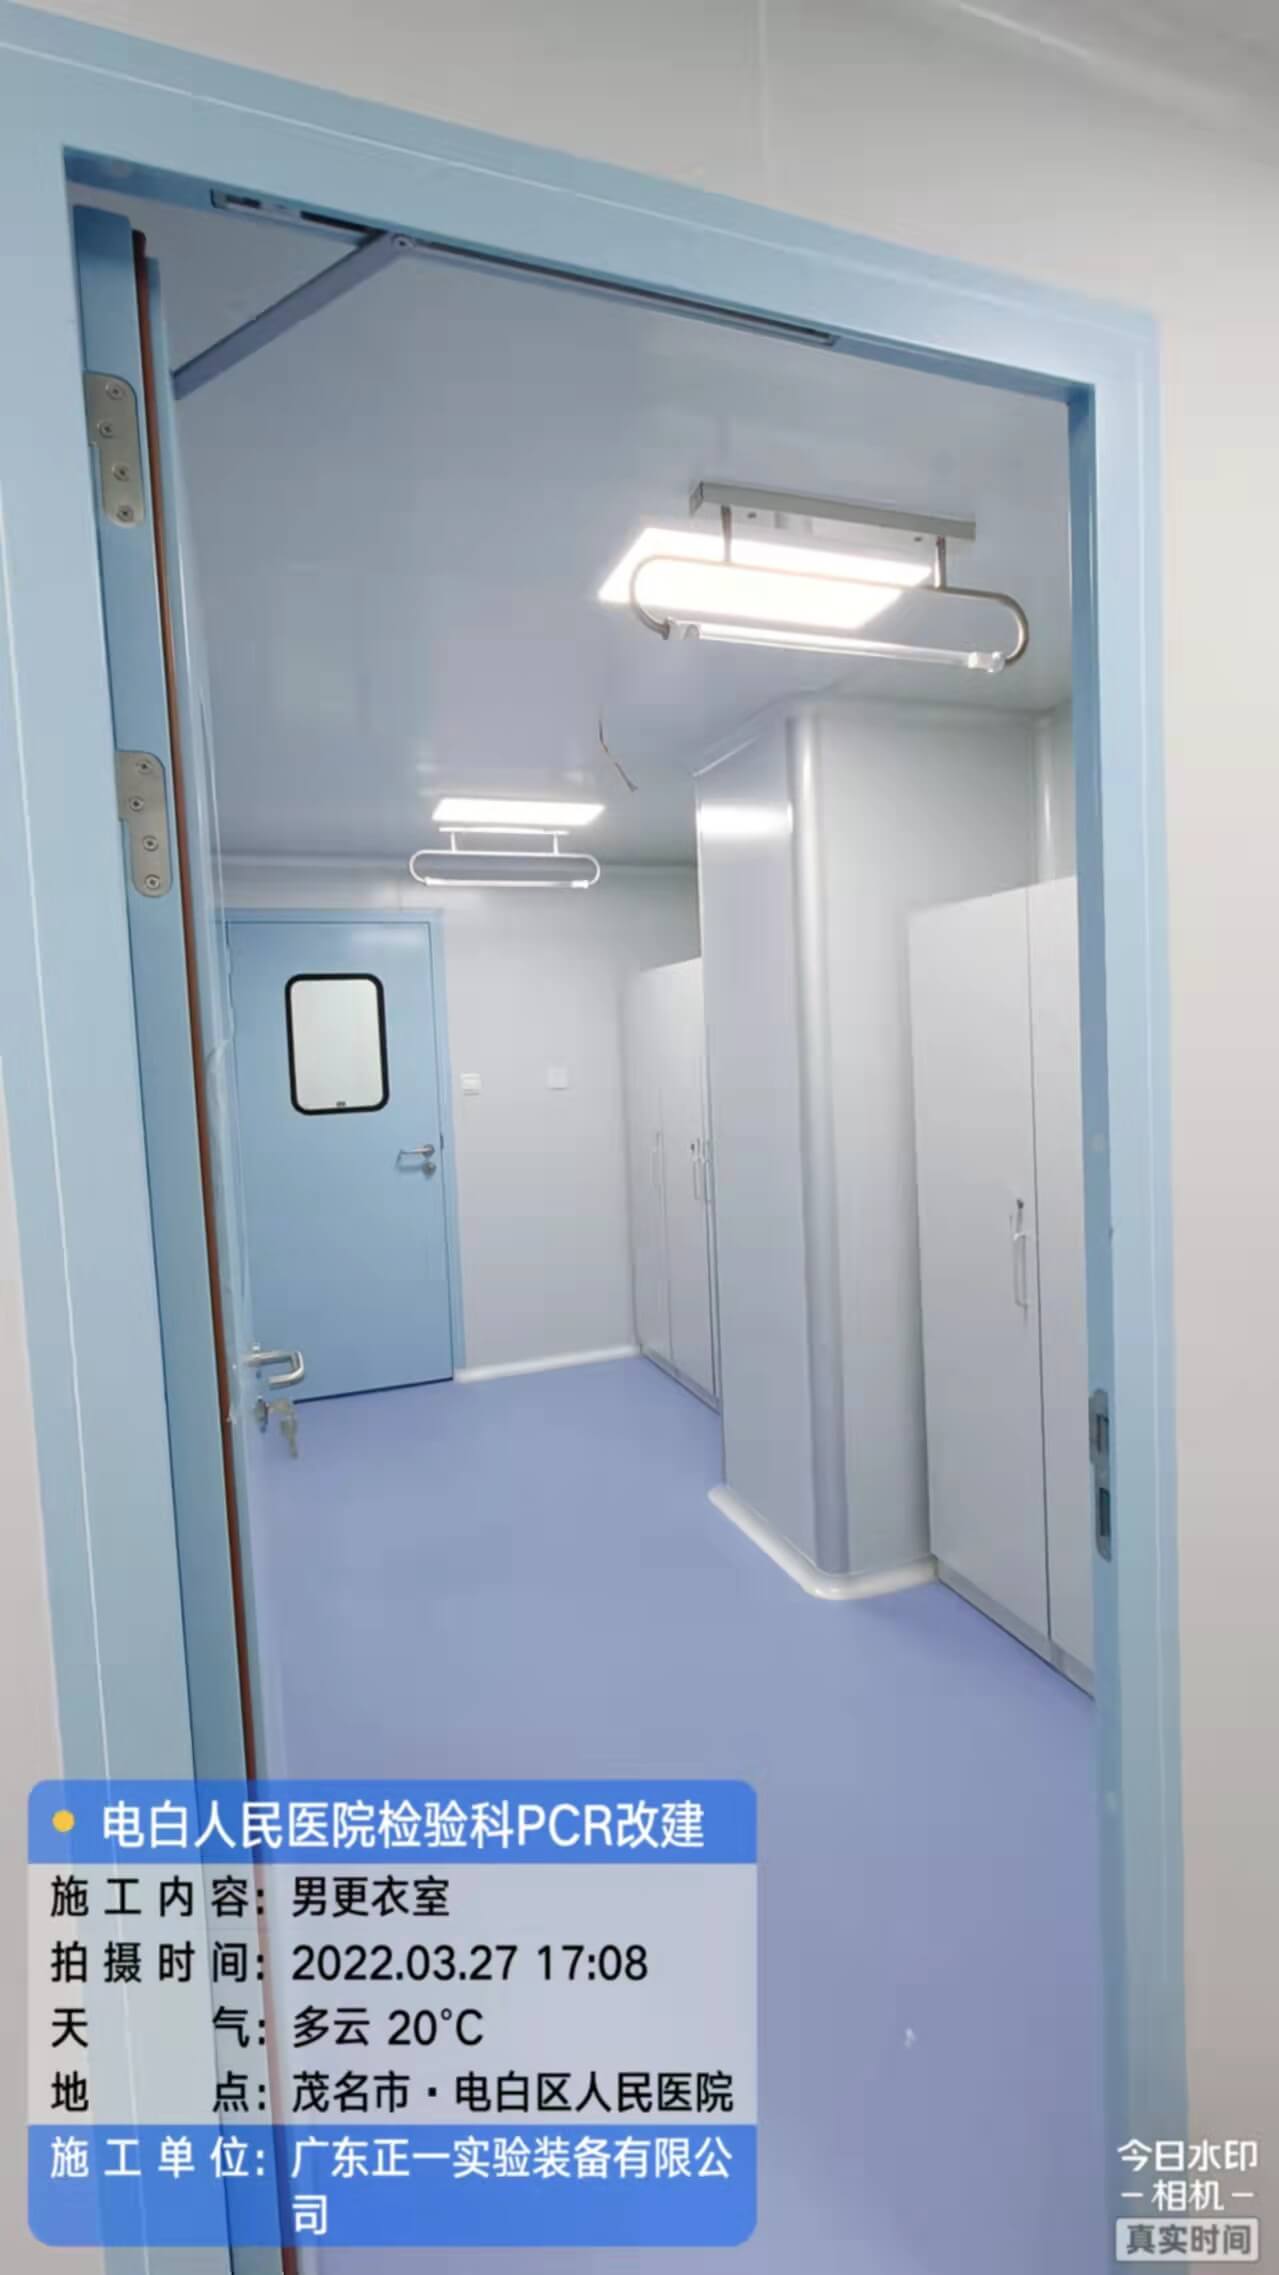 茂名市电白区人民医院外科综合楼12、13层改建检验科及PCR实验室工程 (17)